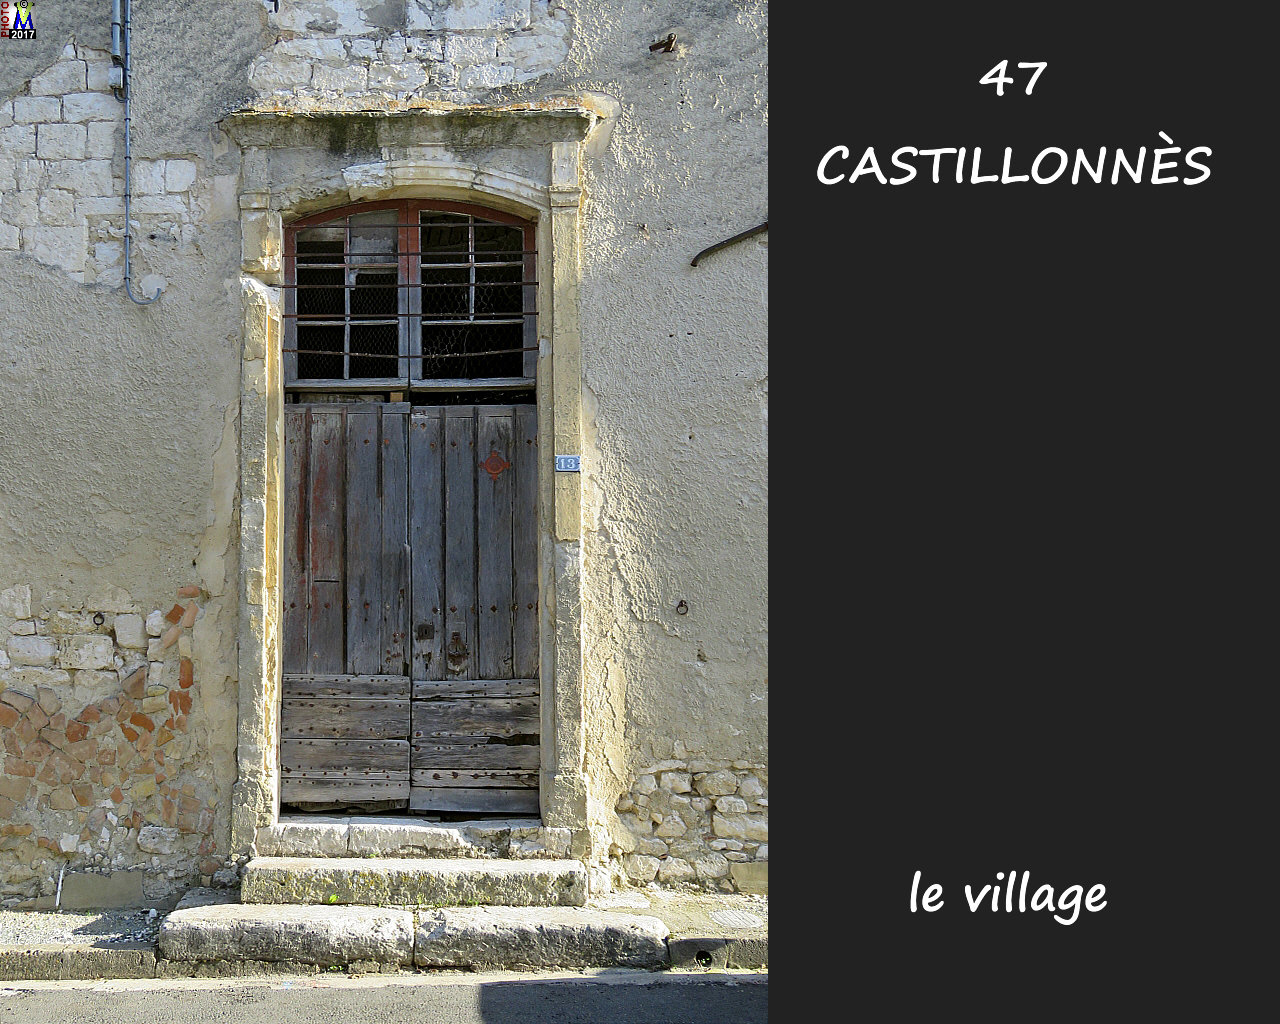 47CASTILLONNES_village_142.jpg